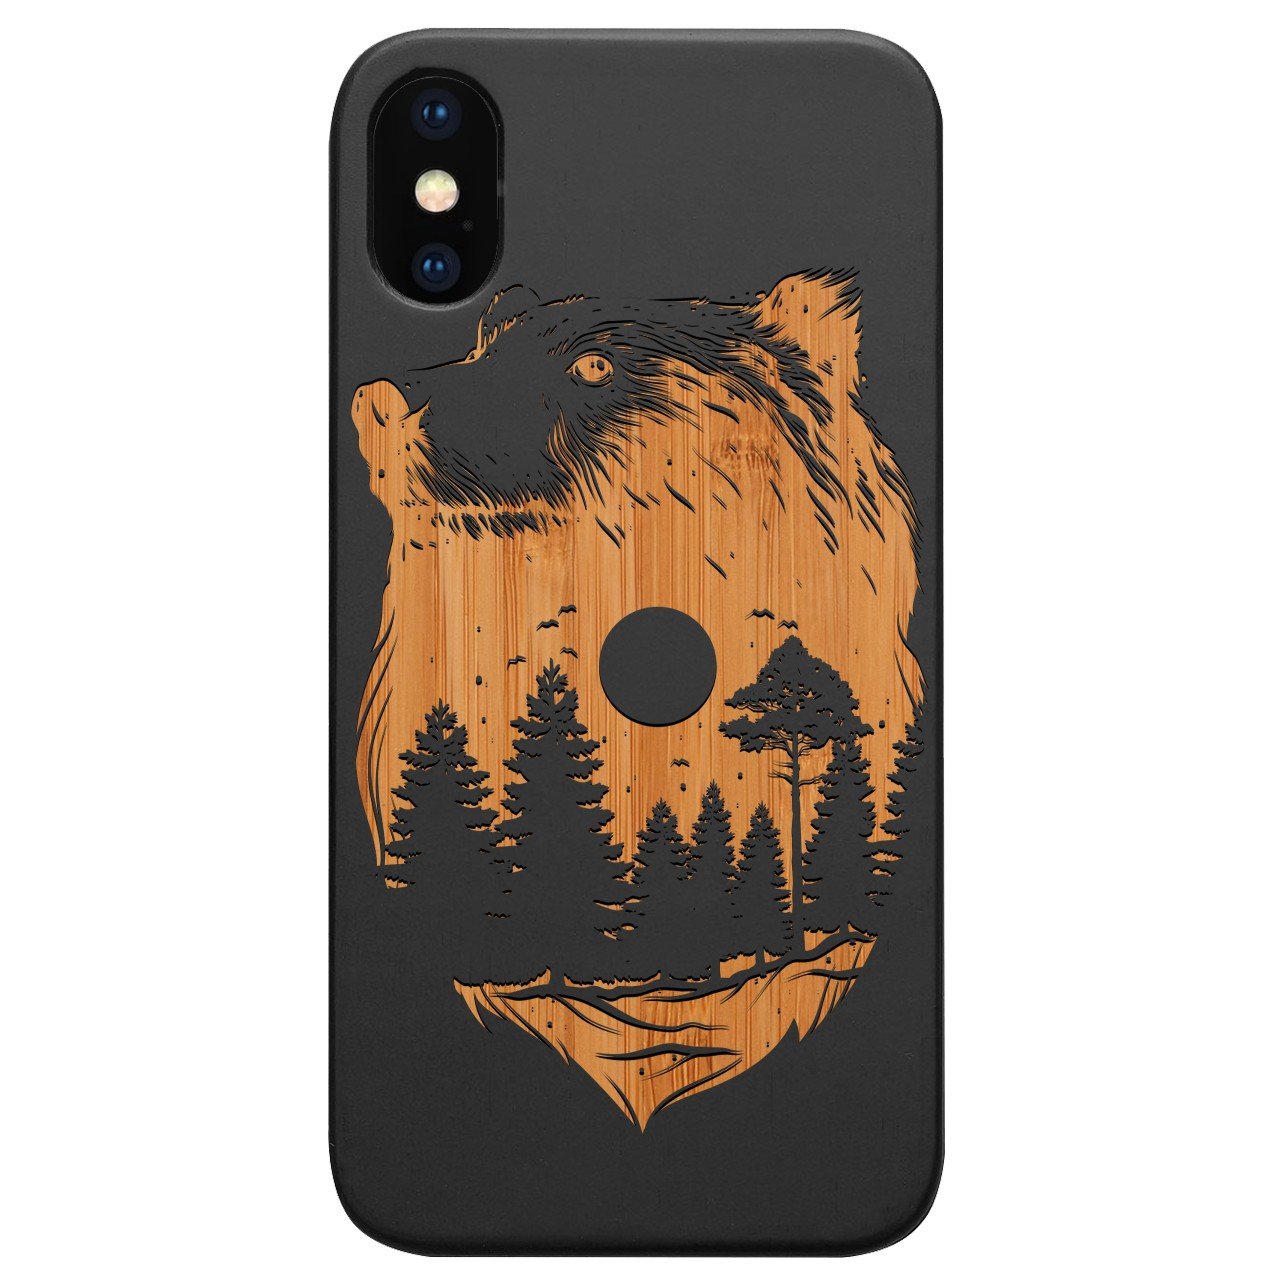 Bear Landscape 1 - Engraved - Wooden Phone Case